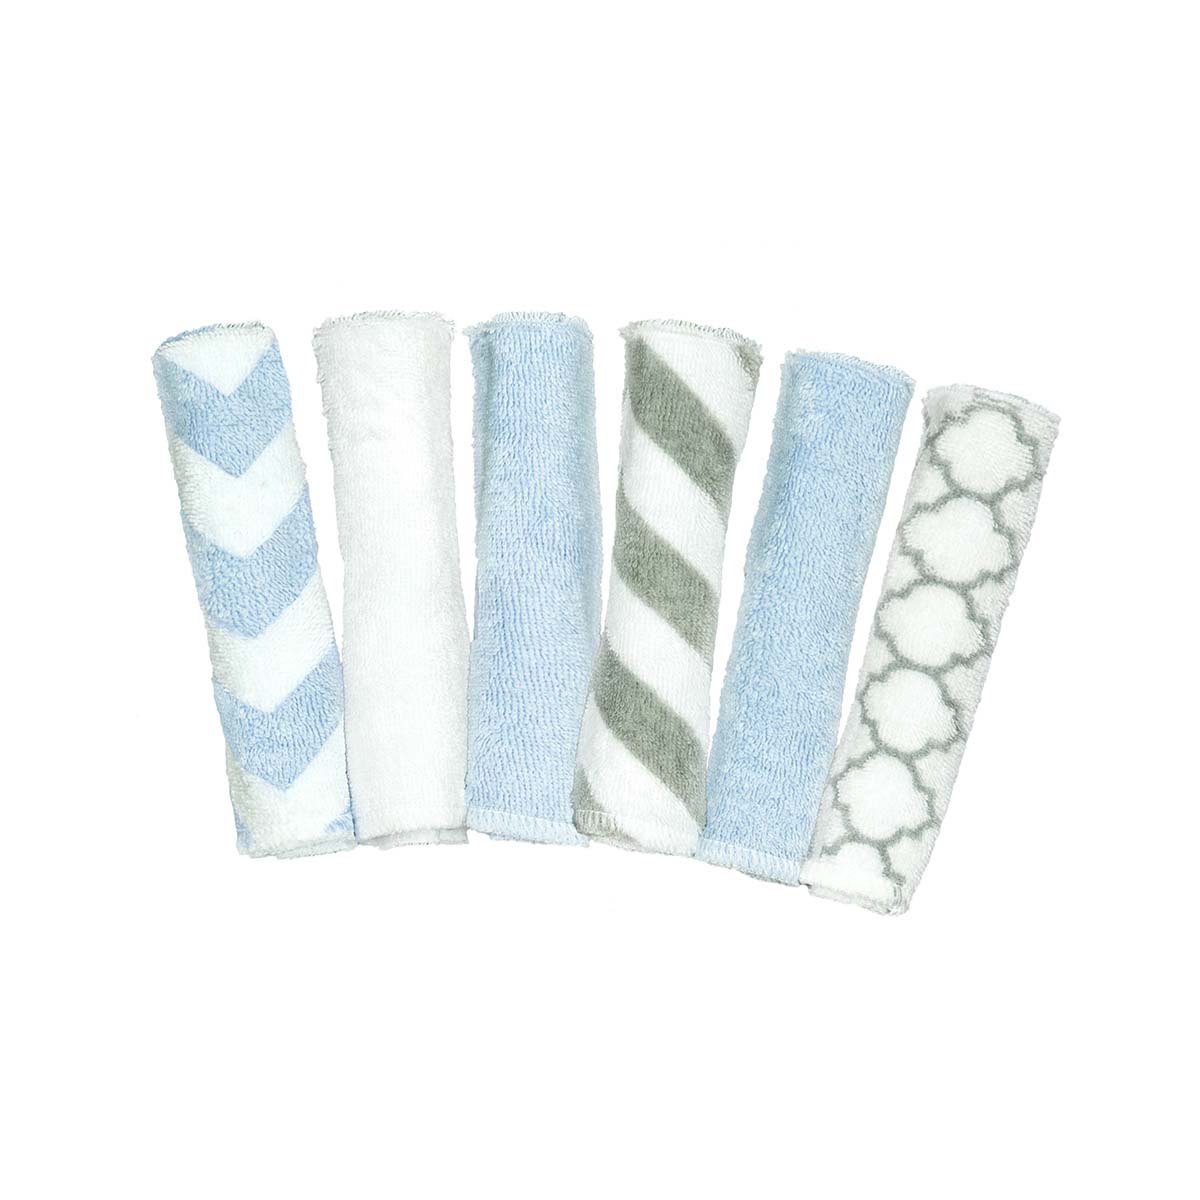 多用途純棉方巾 (藍/粉紅/灰)